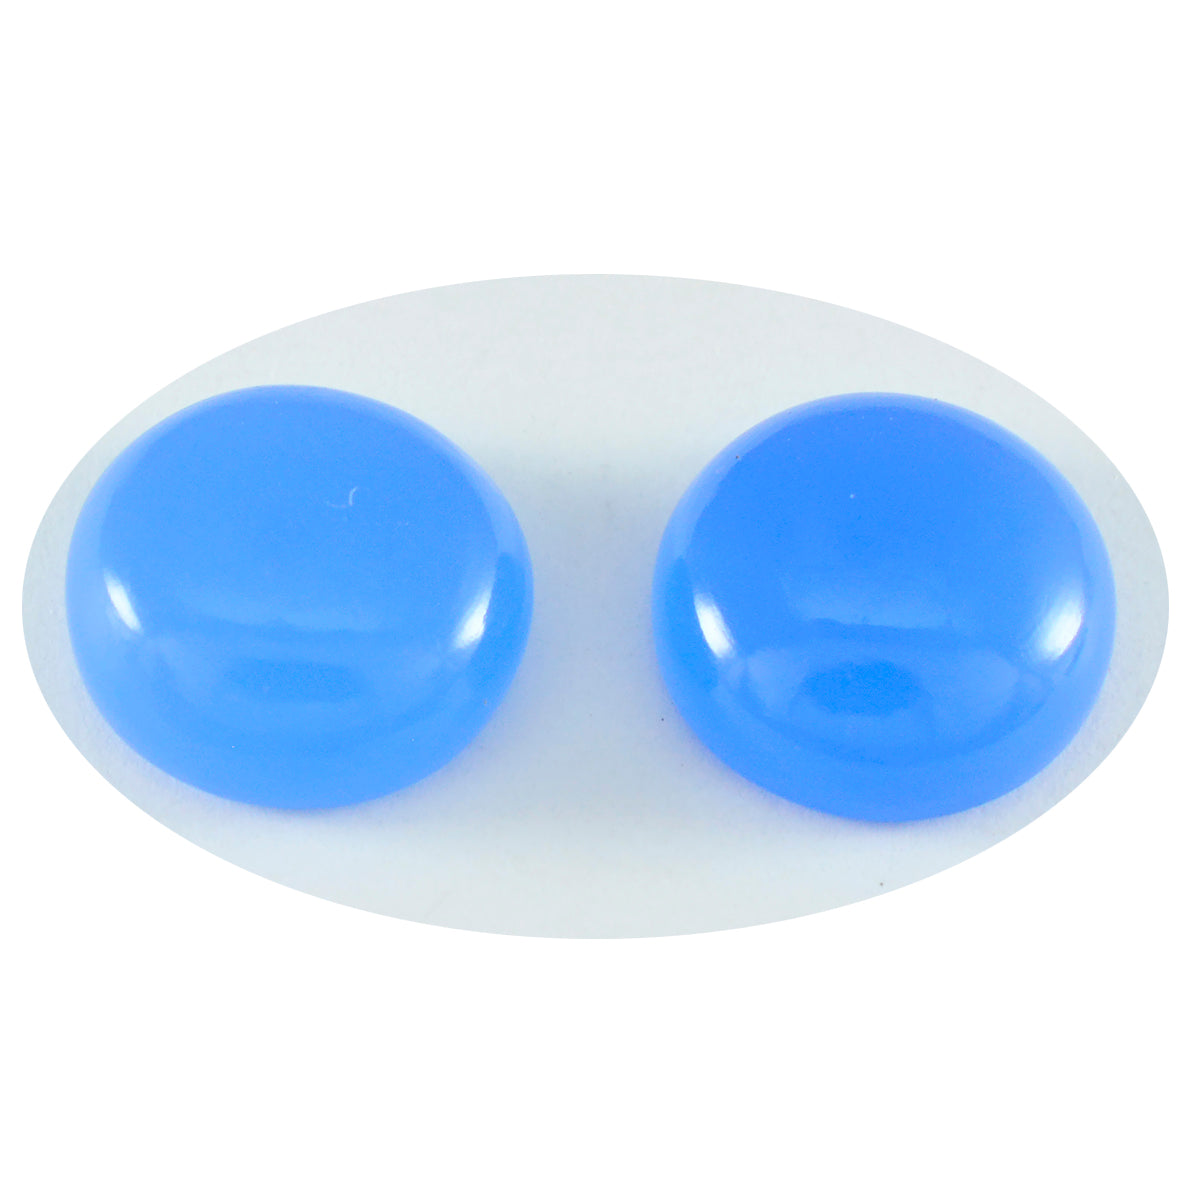 Riyogems 1 pc cabochon de calcédoine bleue 9x9 mm forme ronde qualité attrayante gemme en vrac